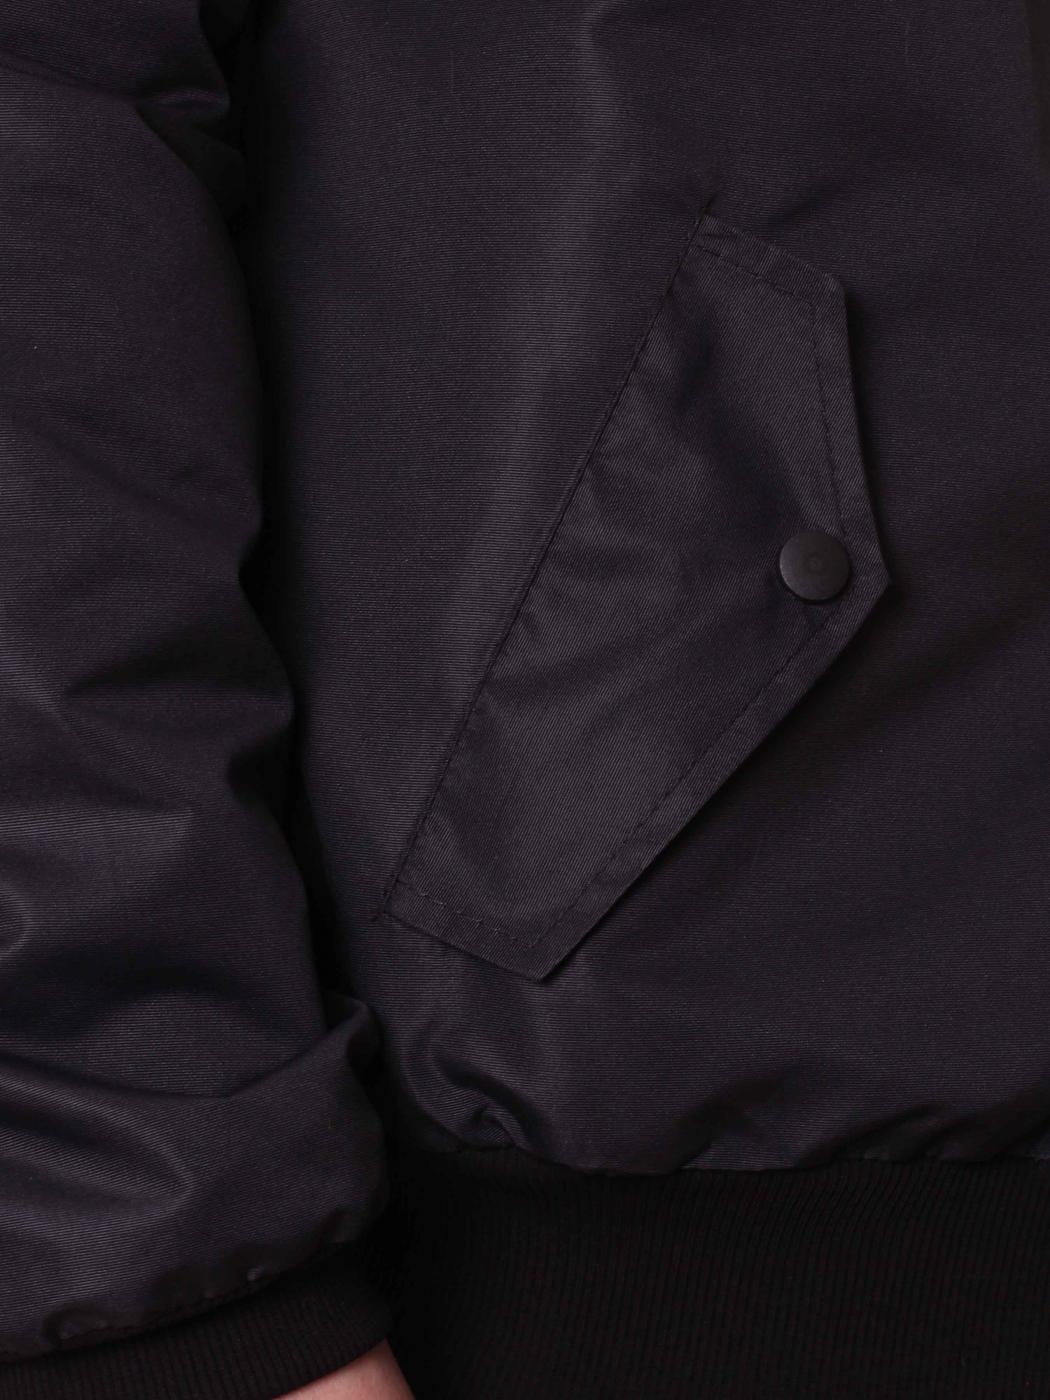 Куртка-бомбер Custom Wear двухсторонний Black/Yellow утеп. Custom Wear - Фото 1